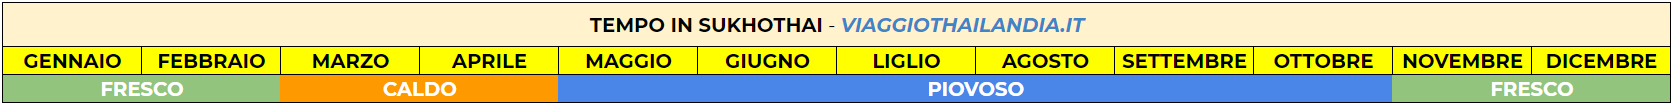 tempo-in-sukhothai-thailandia1